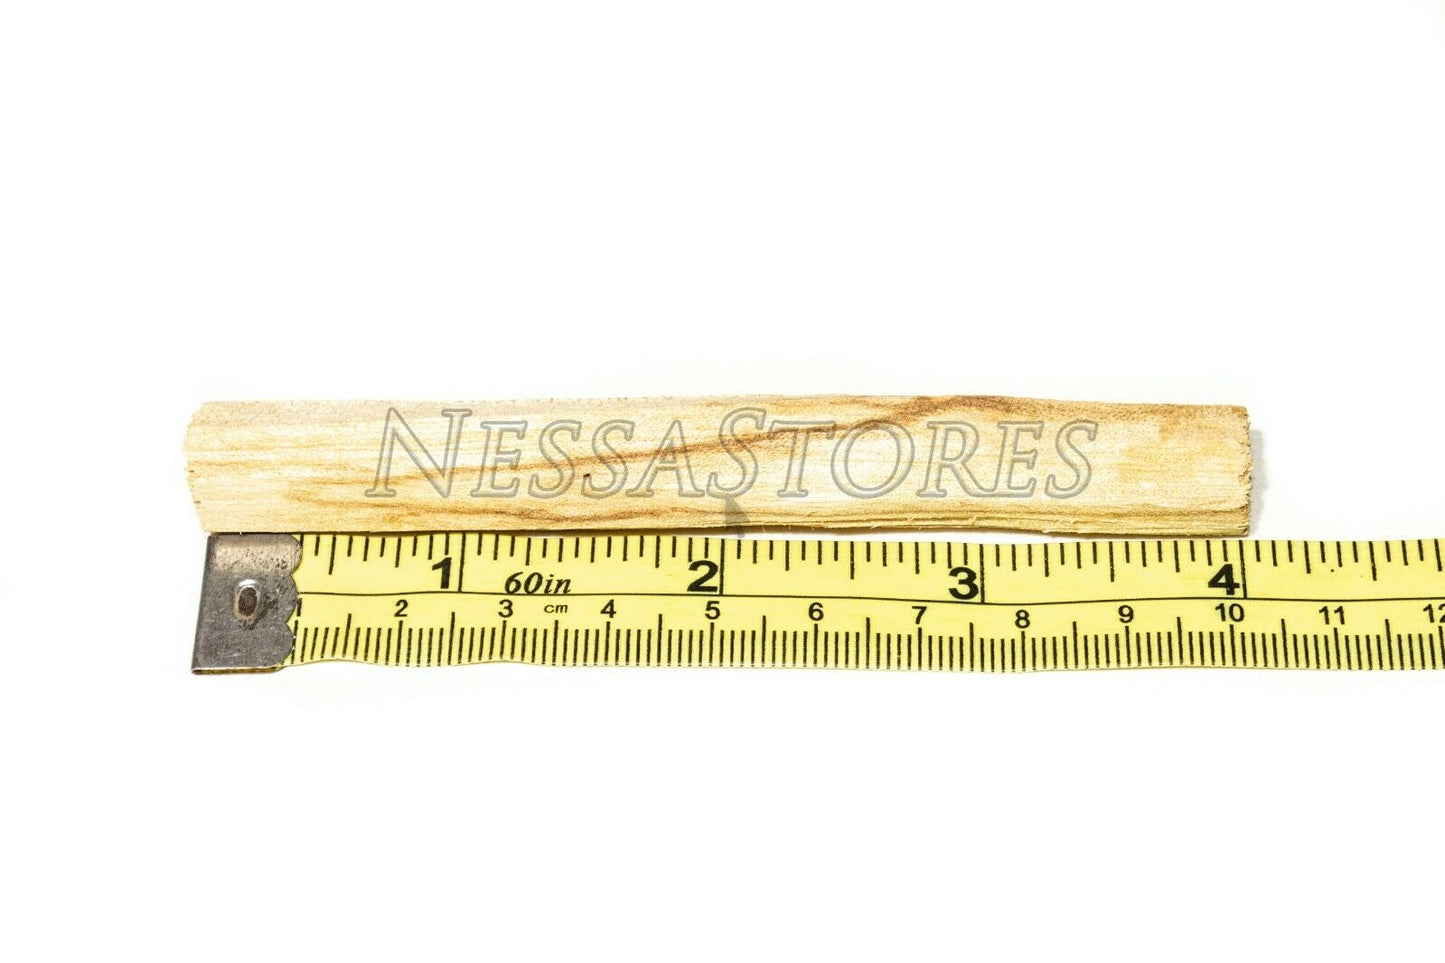 NessaStores Palo Santo Holy Wood Incense Sticks Ecuadorian (40 pcs) #JC-064